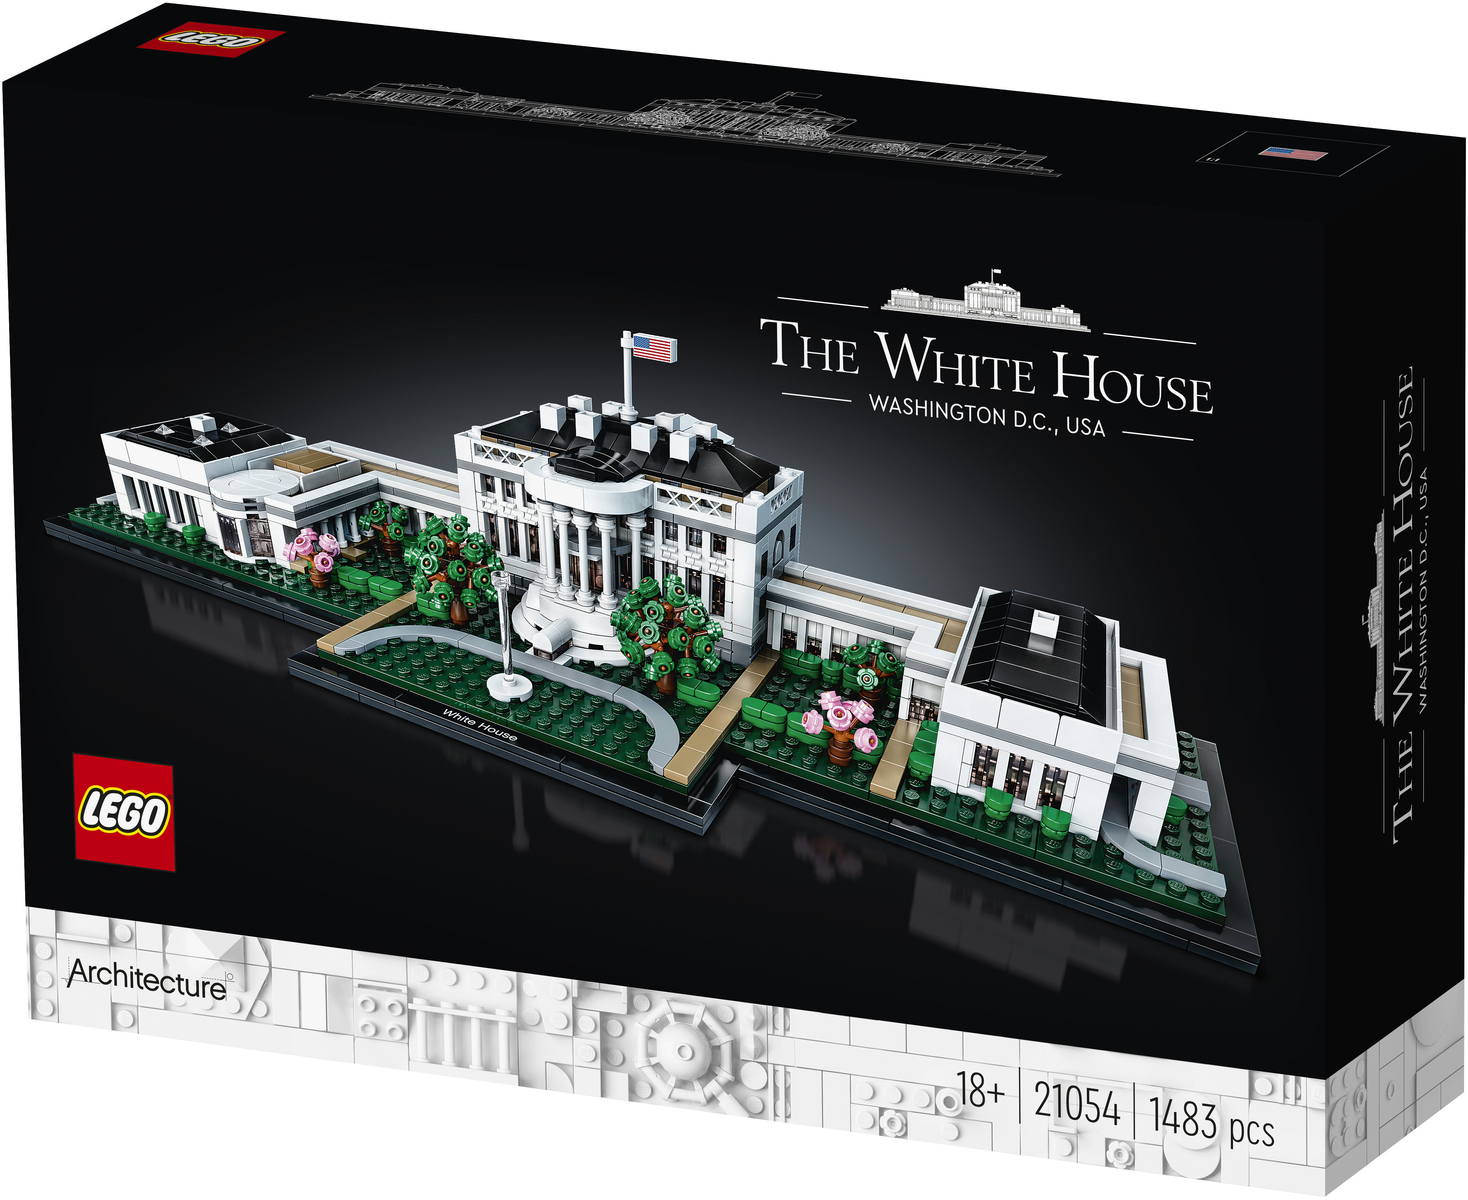 HAUS WEISSE Architecture LEGO 21054 DAS LEGO